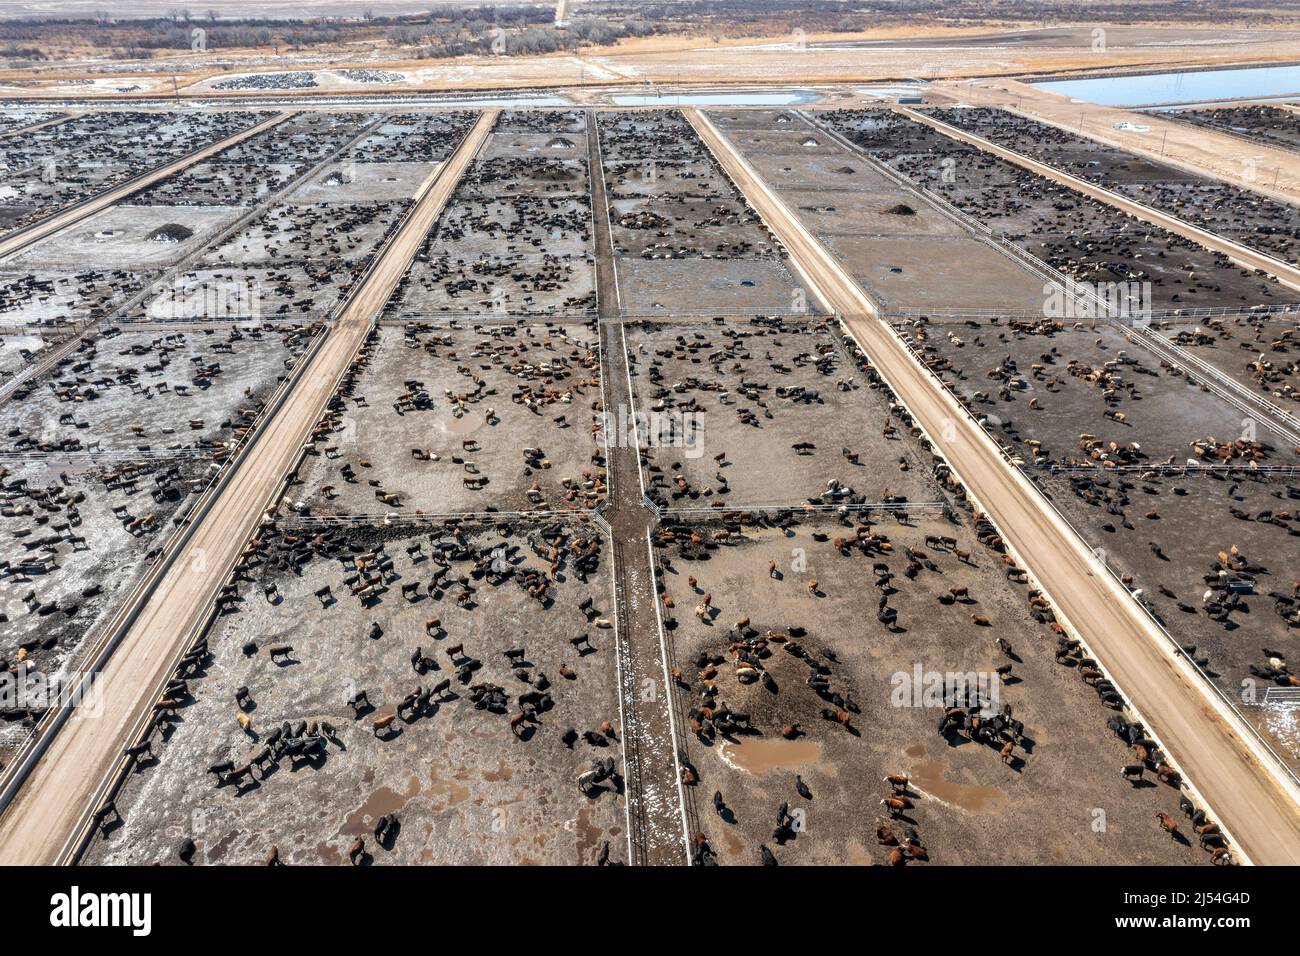 Lamar, Colorado - Un parc d'alimentation de bétail exploité par Five Rivers Cattle Feeding-Colorado Beef. La compagnie nourrit 61 000 bovins ici, et près d'un million de CA Banque D'Images